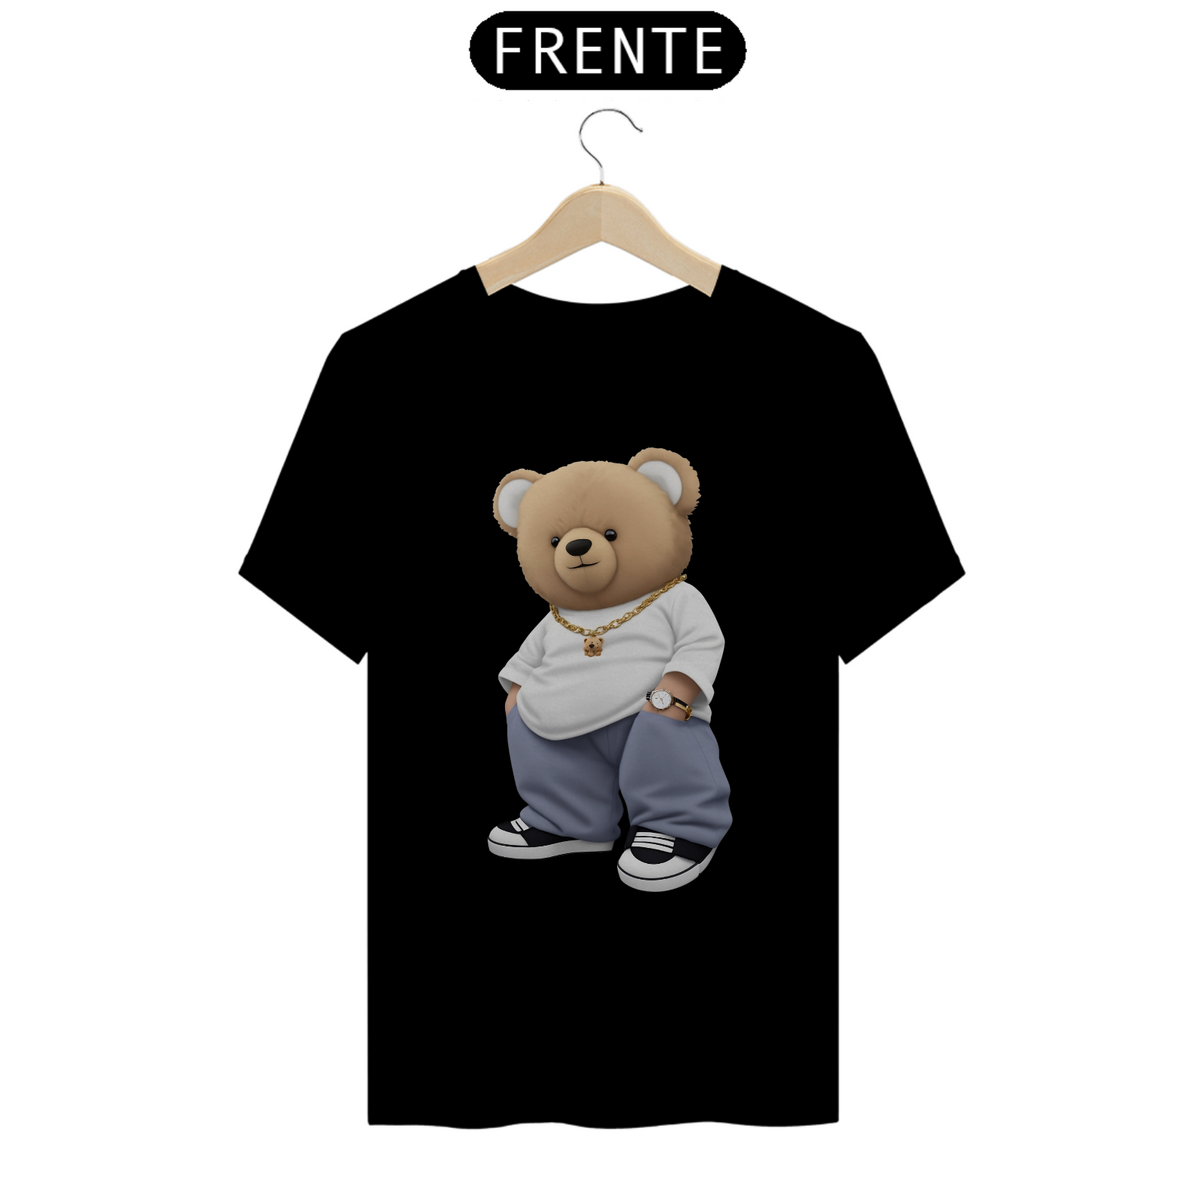 Nome do produto: Oversize Teddy Bear - Quality